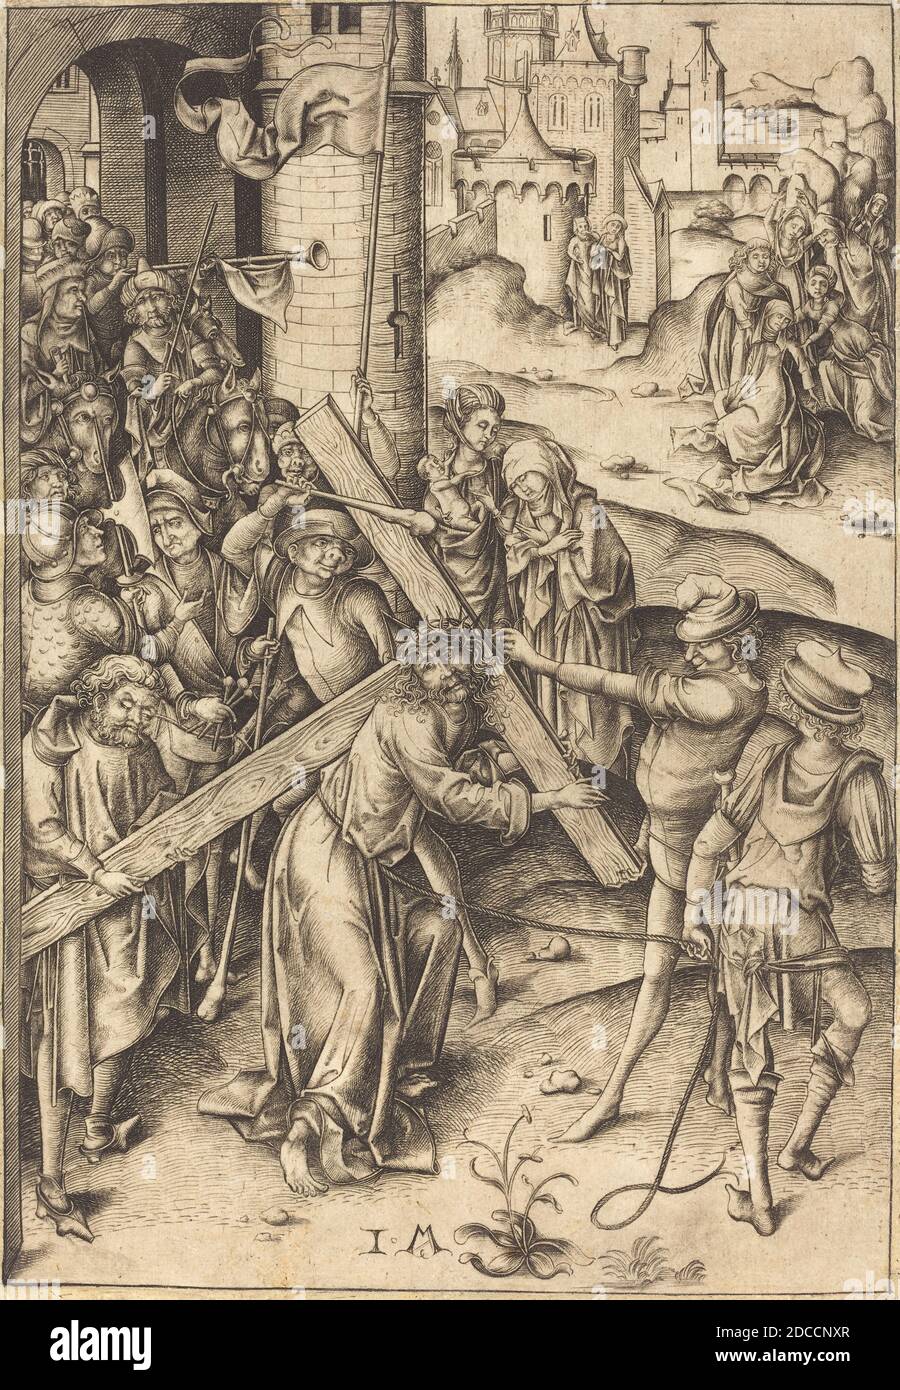 Israhel van Meckenem, (artist), German, c. 1445 - 1503, The Bearing of the Cross, Twelve Scenes of the Pasion, (series), c. 1480, engraving Stock Photo